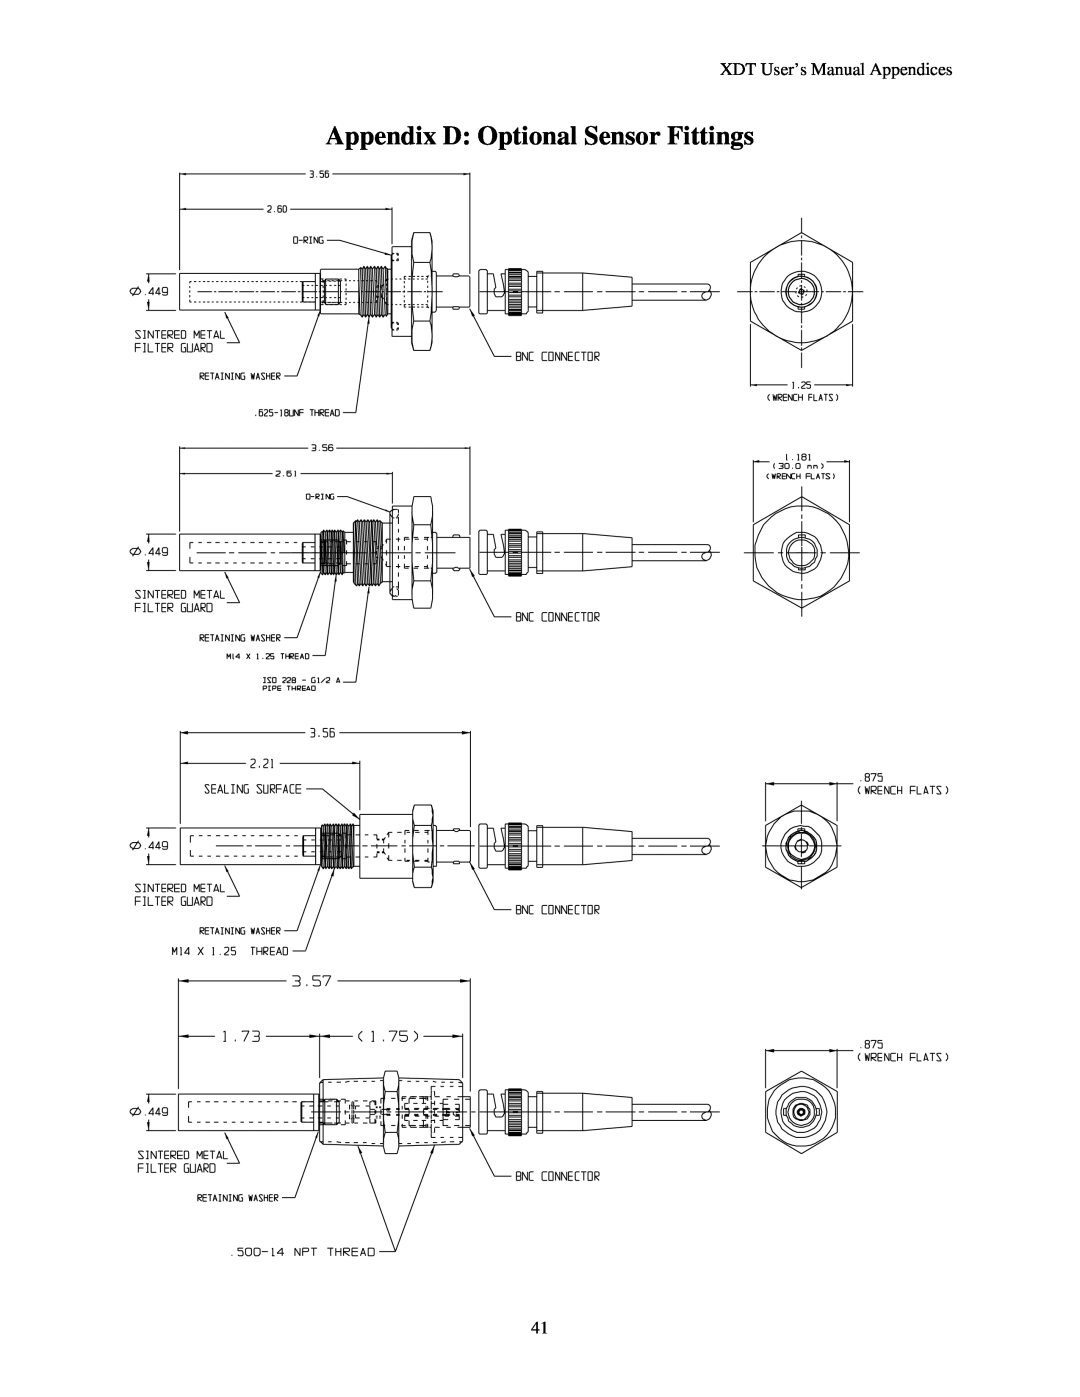 Epson manual Appendix D Optional Sensor Fittings, XDT User’s Manual Appendices 